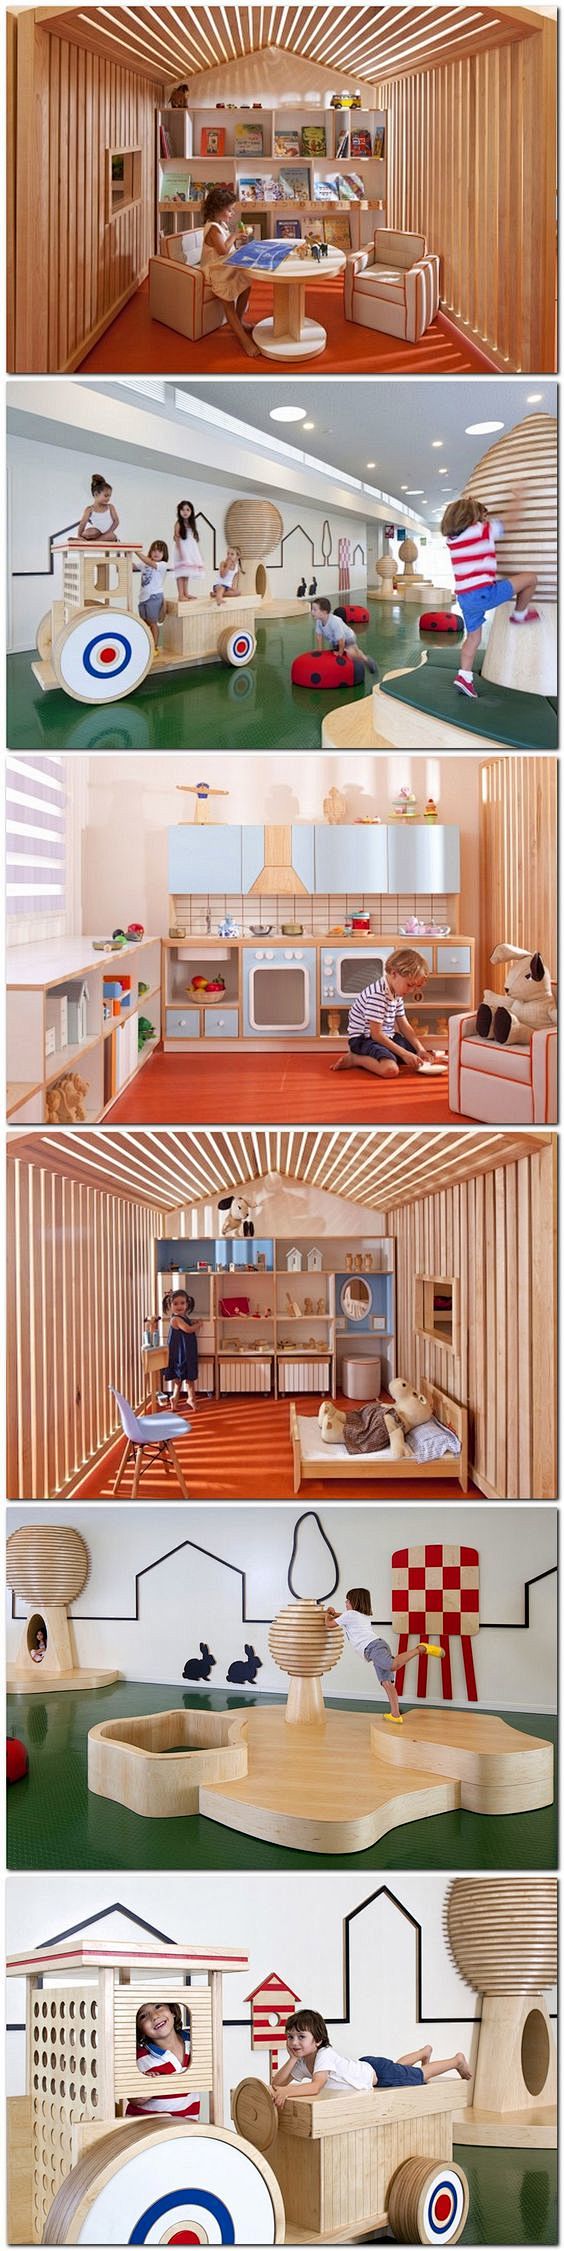 儿童活动空间设计。